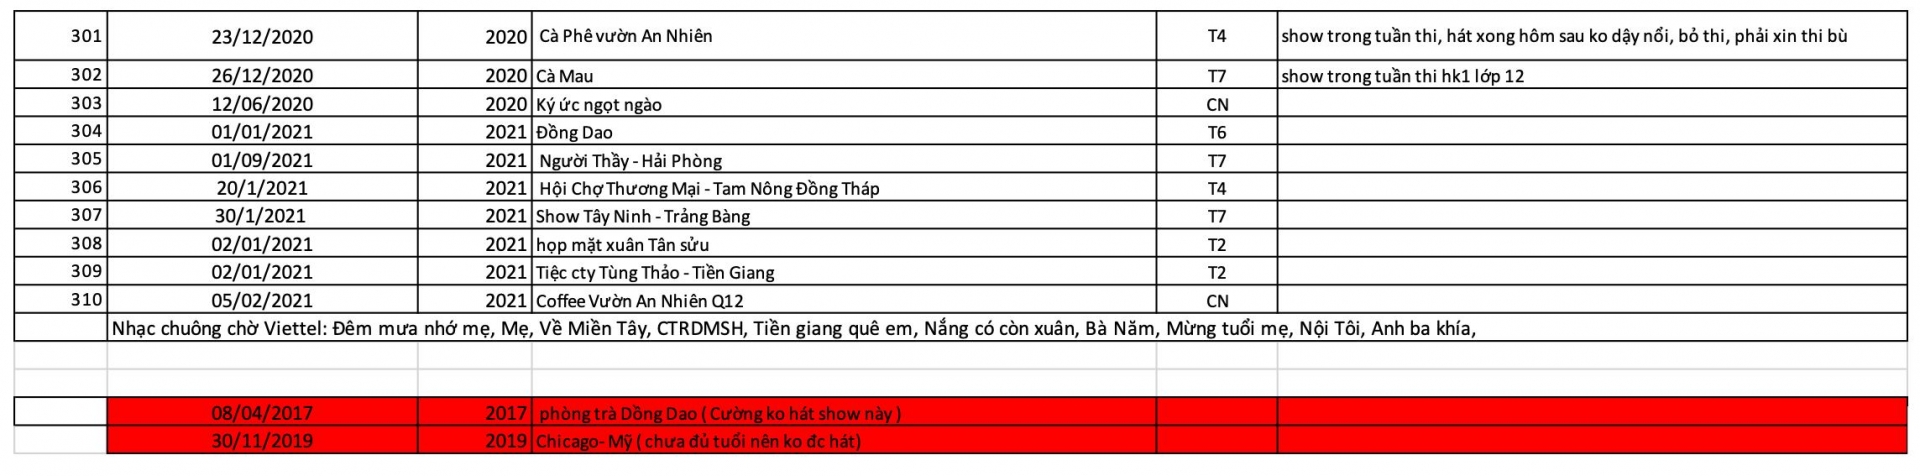 Danh sách bao gồm 310 show diễn trong 5 năm của Hồ Văn Cường khiến cư dân mạng xôn xao